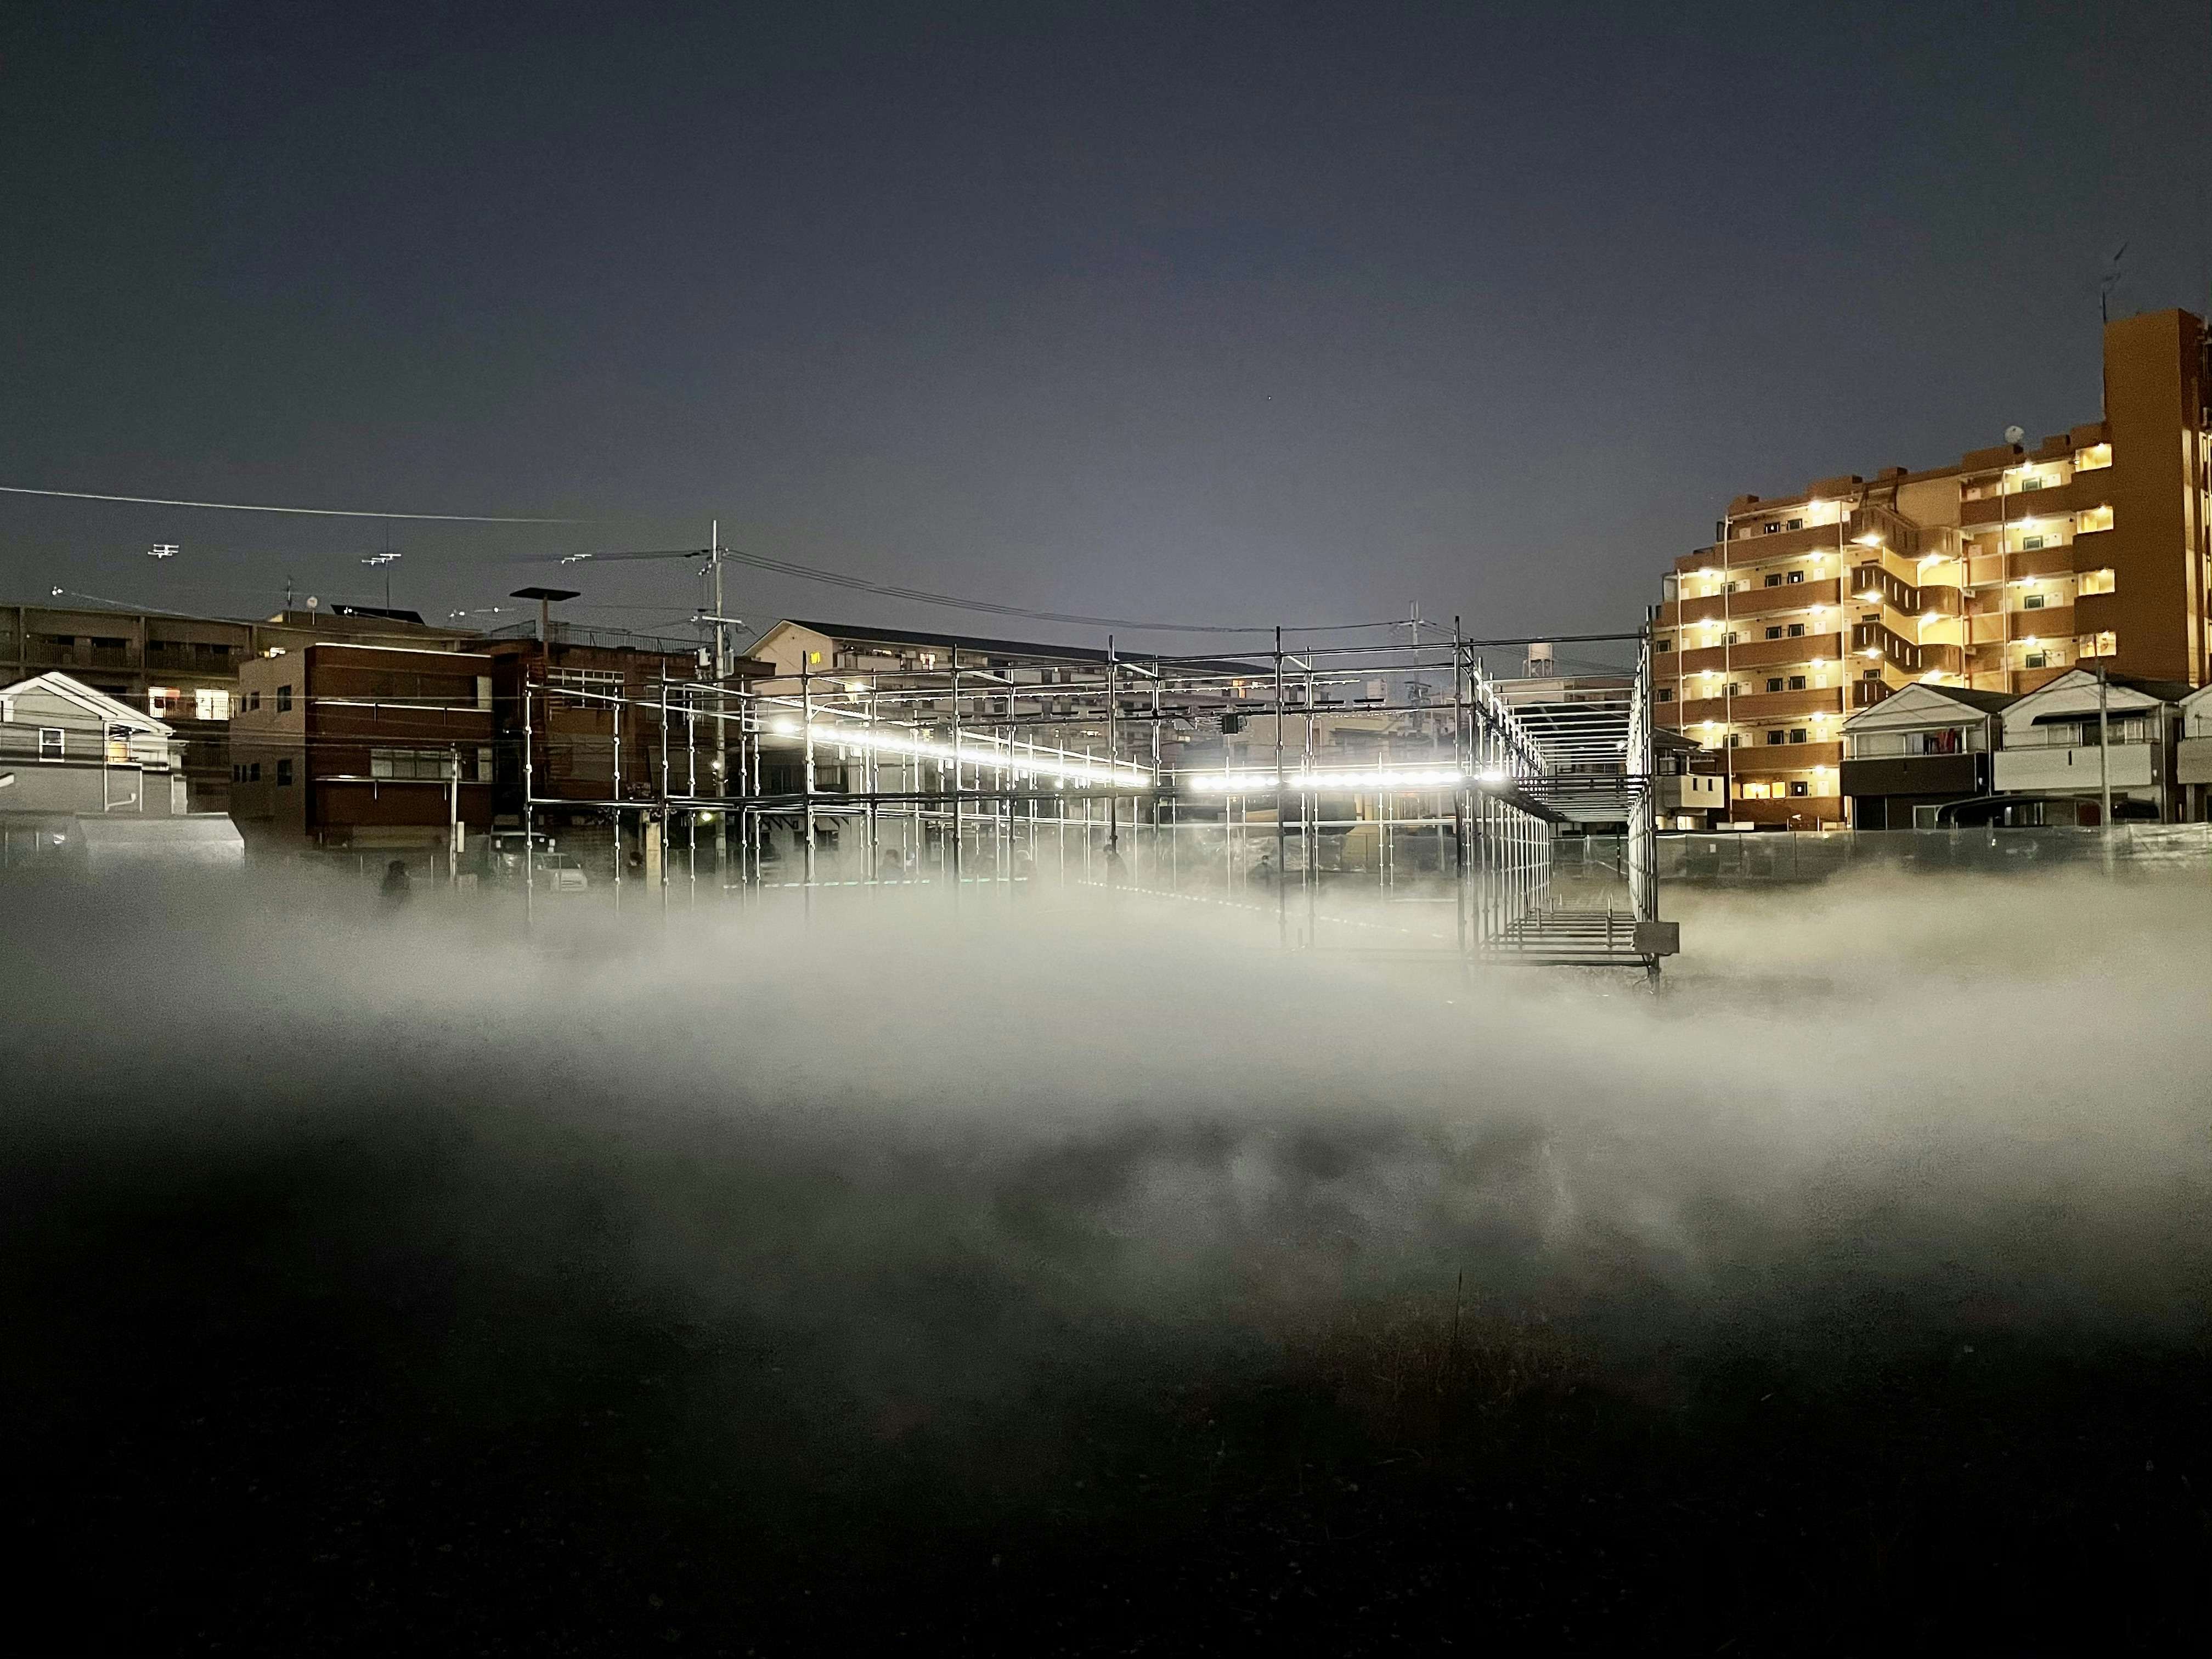 中谷芙二子と高谷史郎が見せる「霧の街のクロノトープ」。京都 